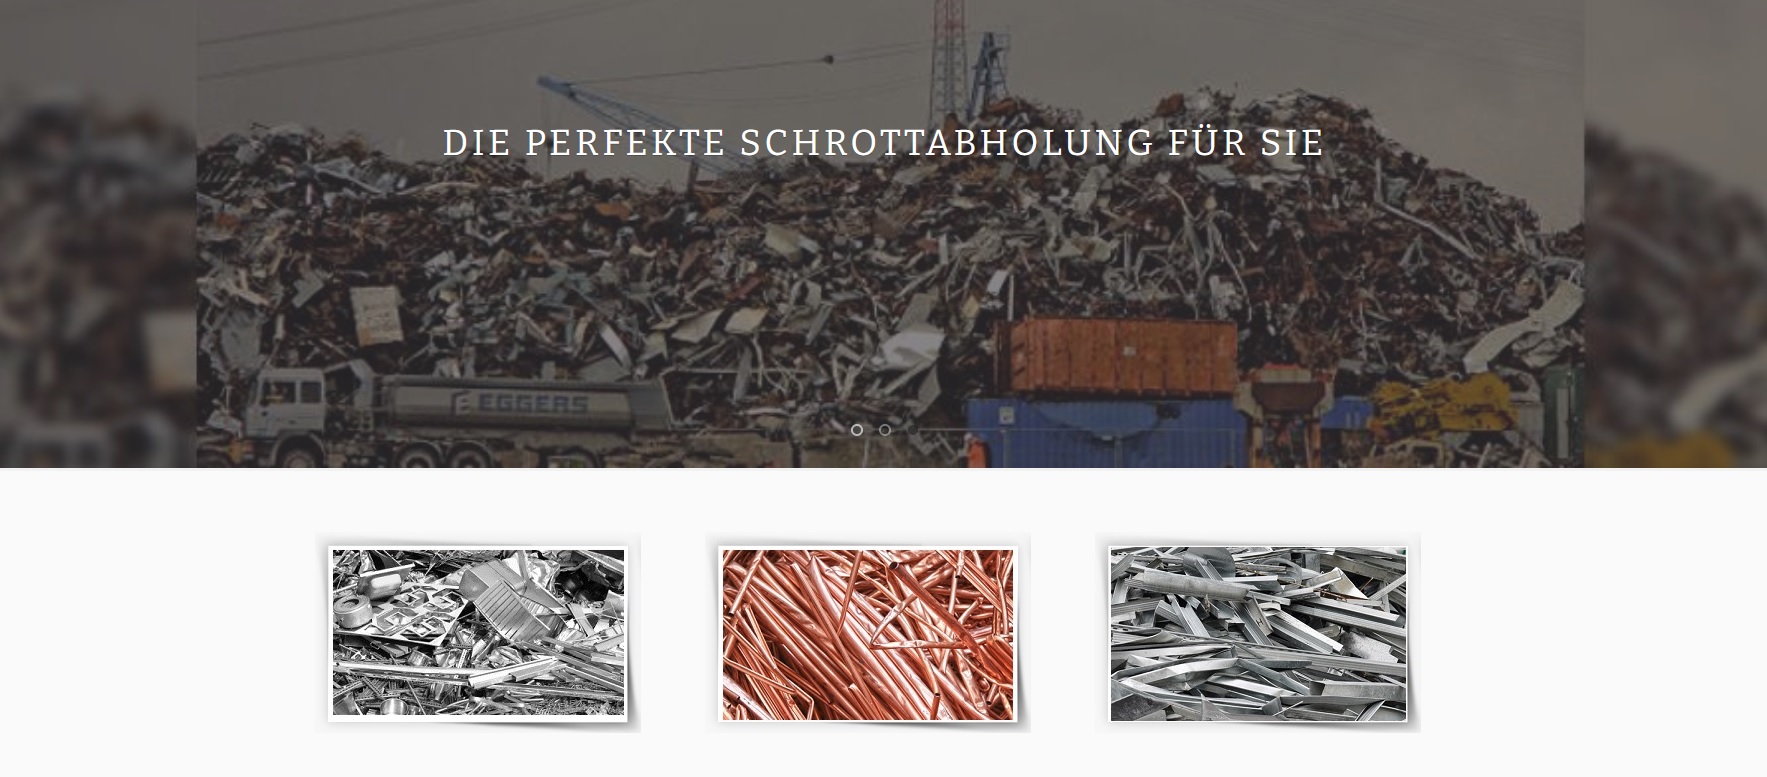 Schrottabholen in Wuppertal: Unser Service, Ihre Umwelt - Kostenlos und Zuverlässig